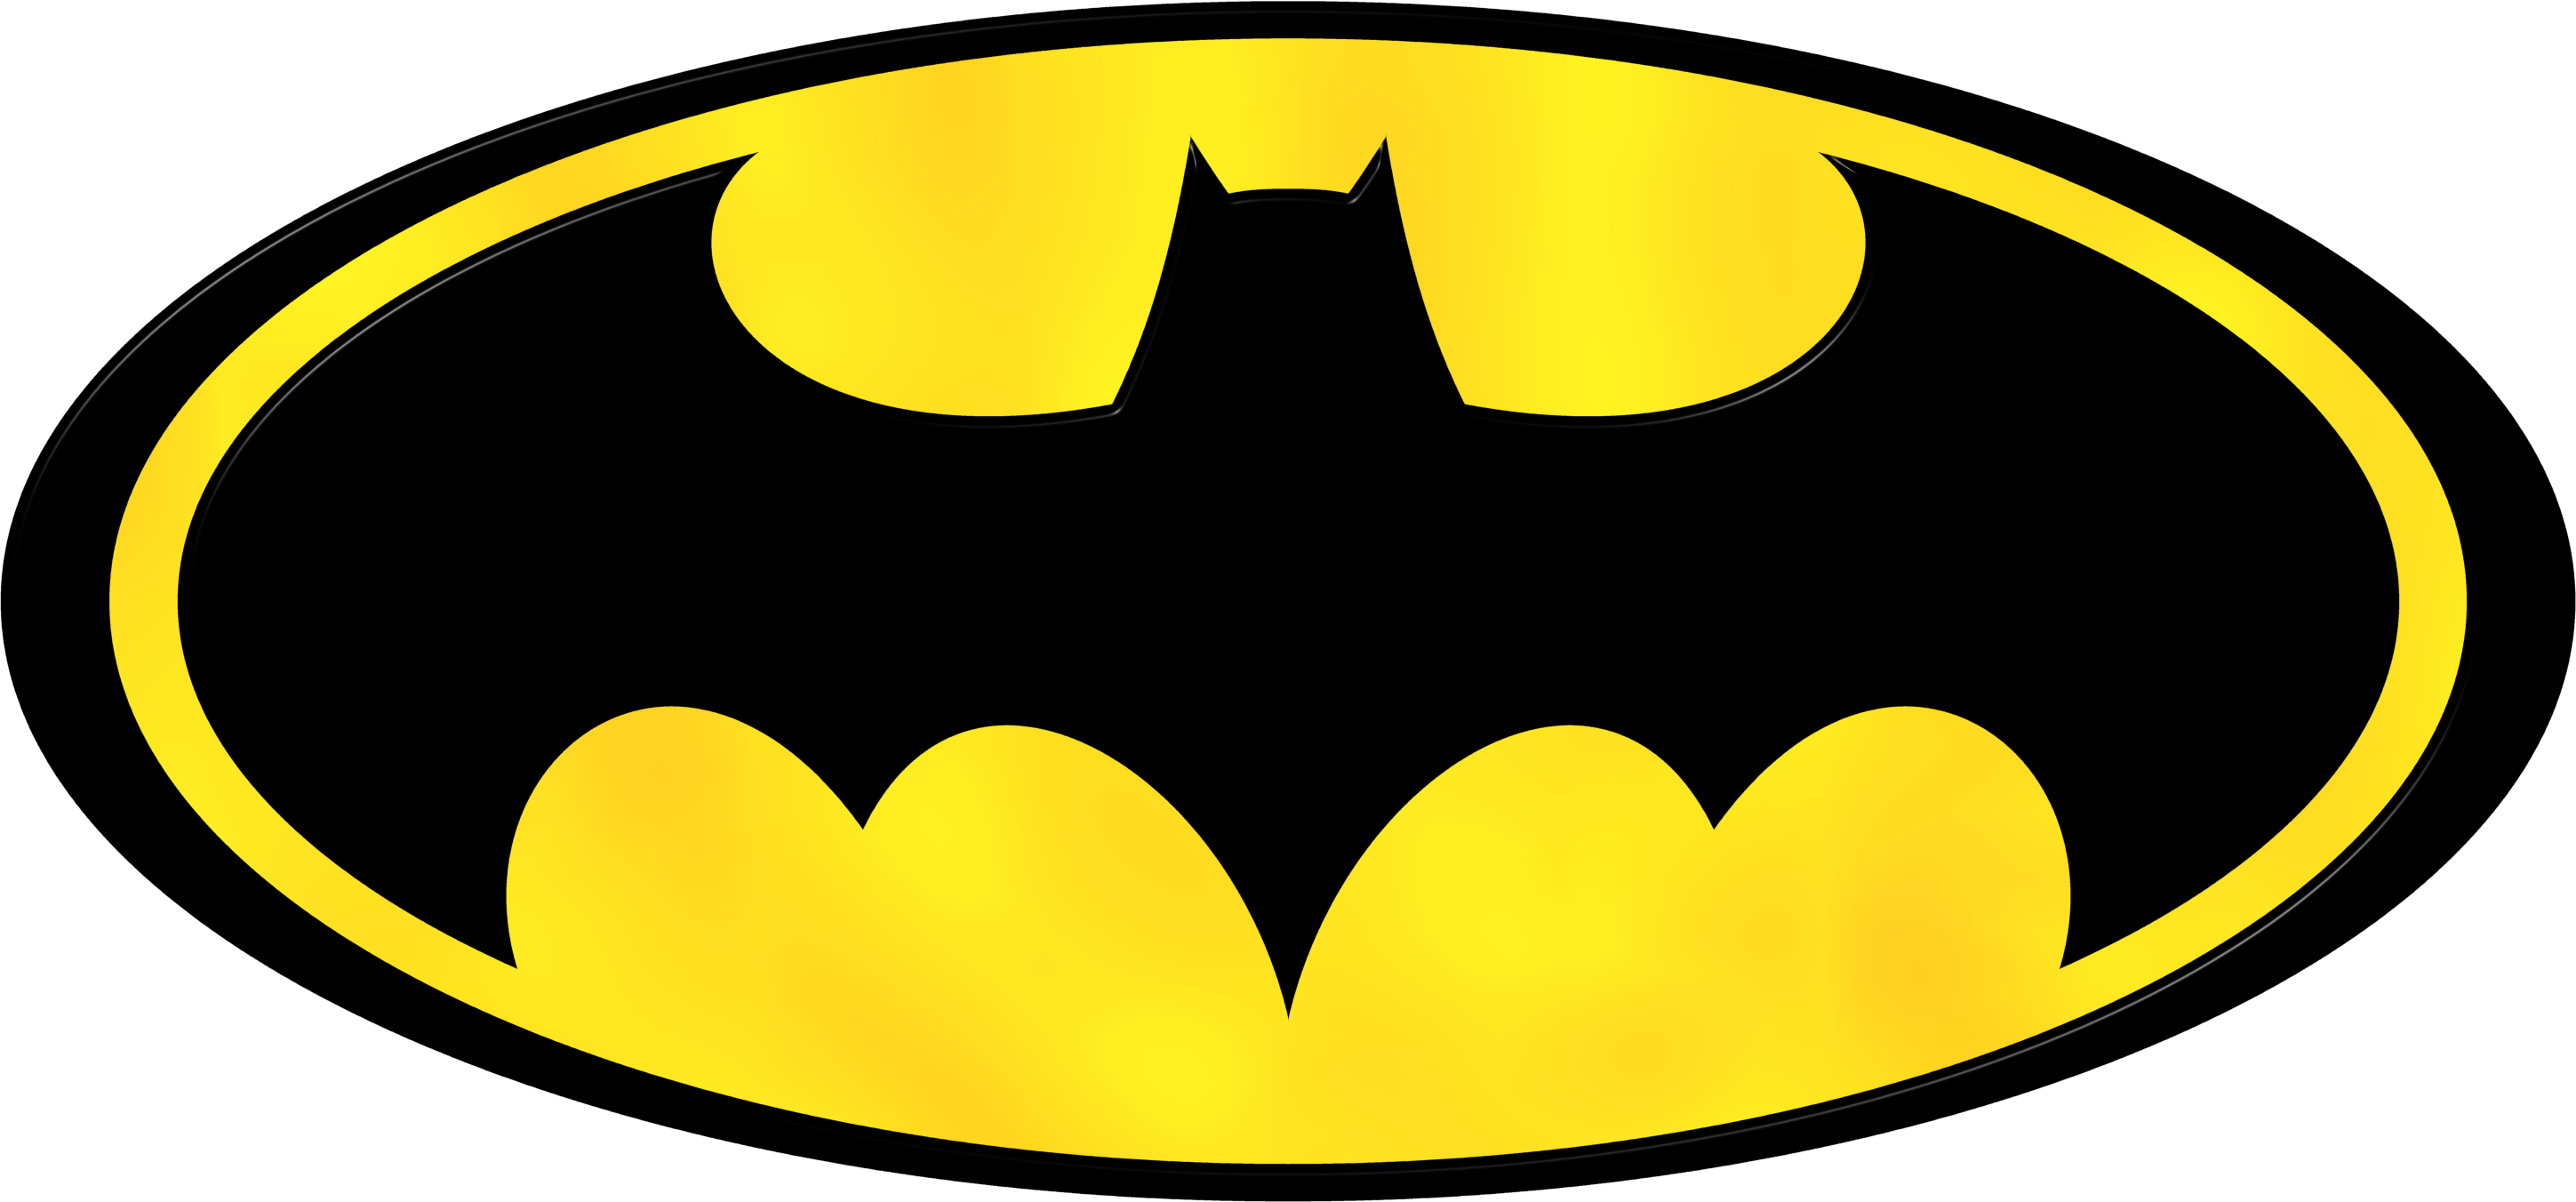 Pics Of Batman Symbol - Batman Logo Transparent Background (2898x1352)